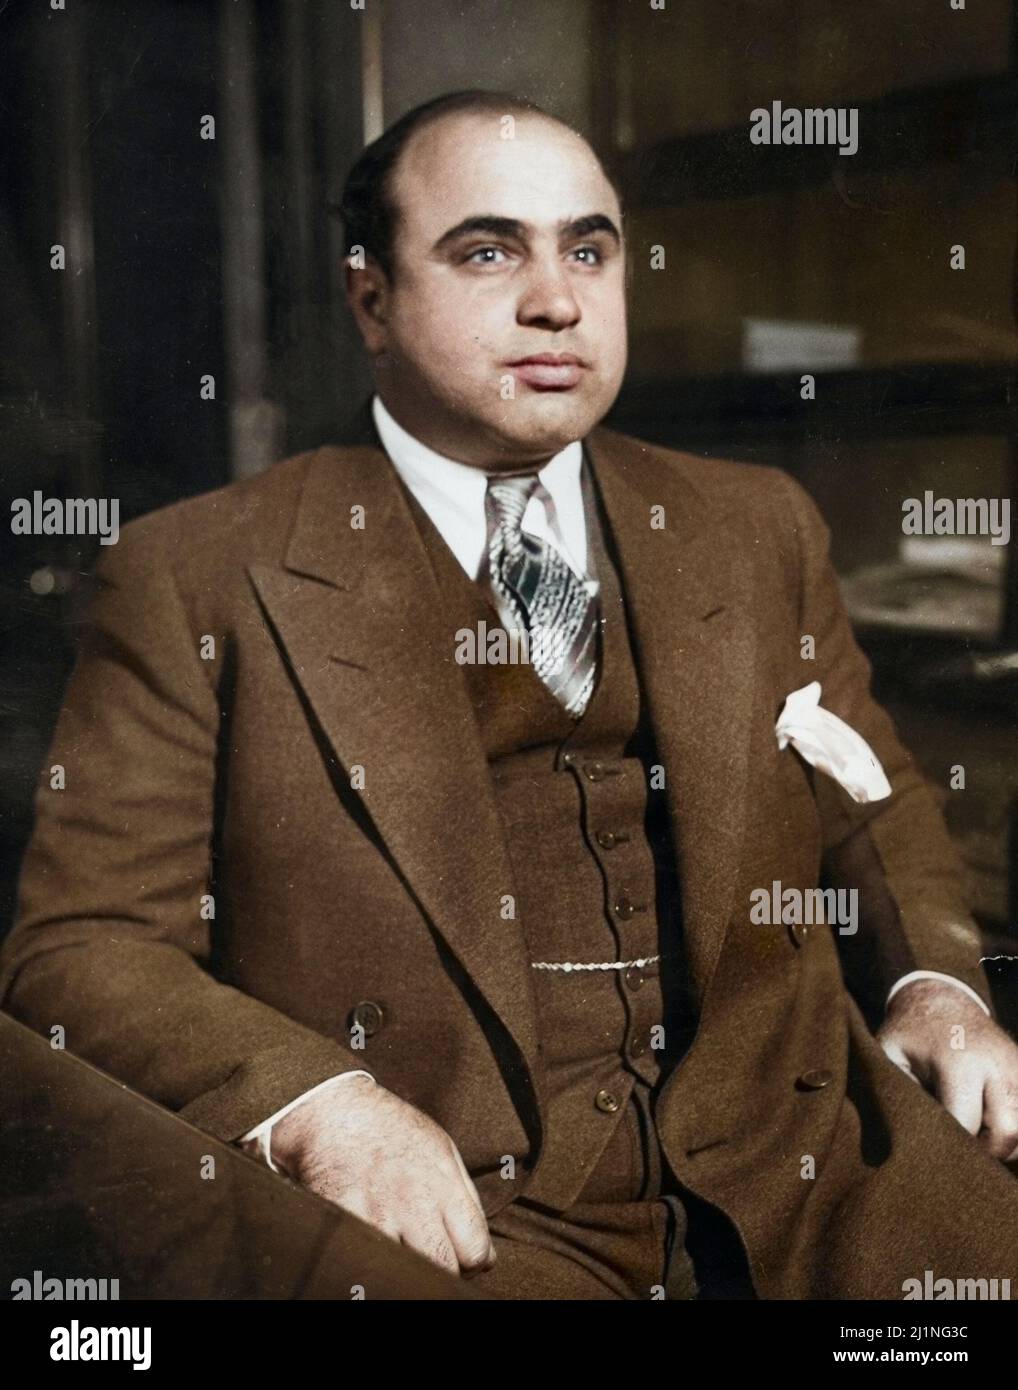 Der amerikanische Kriminelle Al Capone (1899 - 1947). Das Massaker am Valentinstag zementierte seine Kontrolle über die Unterwelt von Chicago. 1930. Eingefärbt. Stockfoto